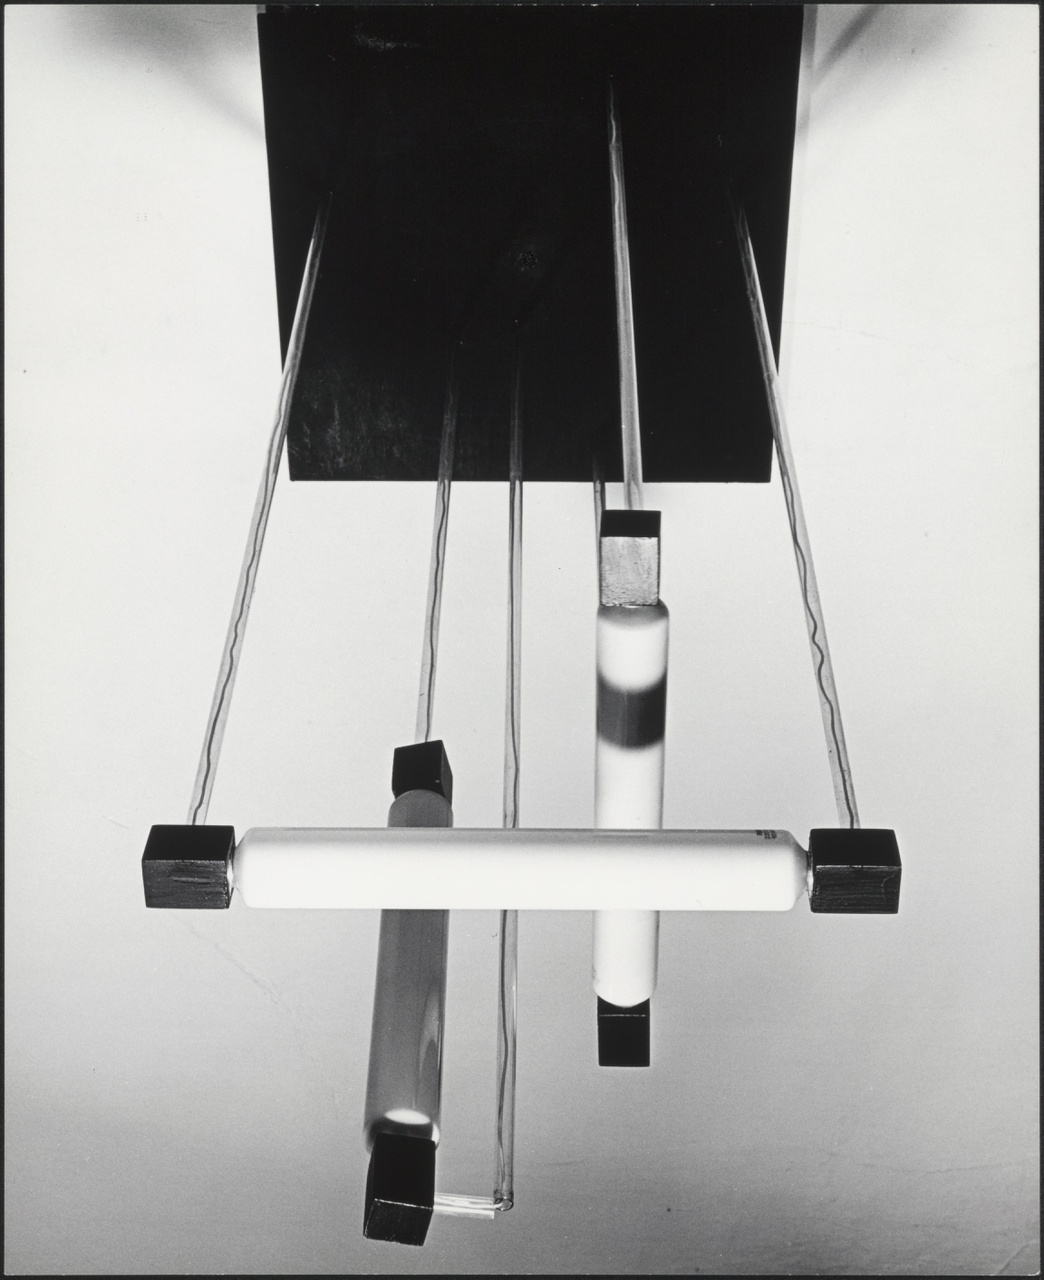 Afbeelding van hanglamp met 3 buizen, van onderen